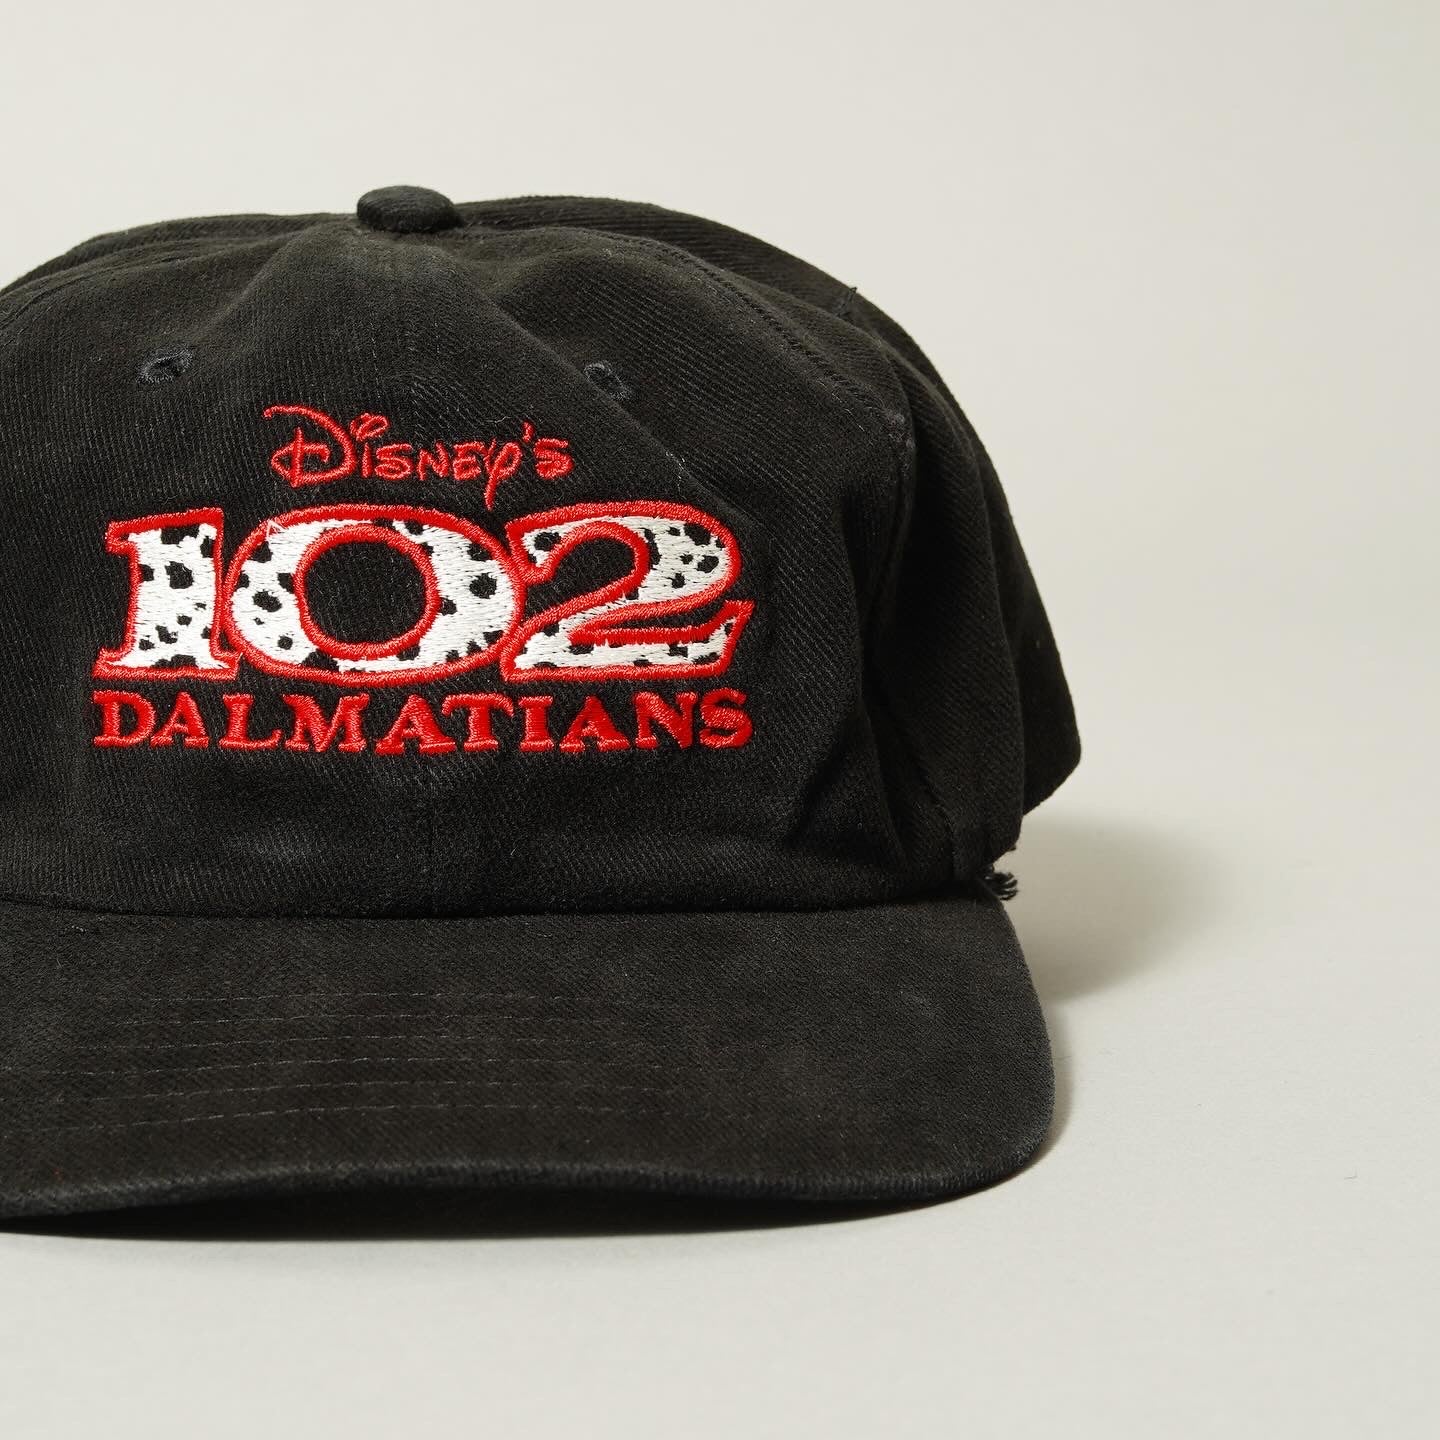 102 DALMATIANS Hat